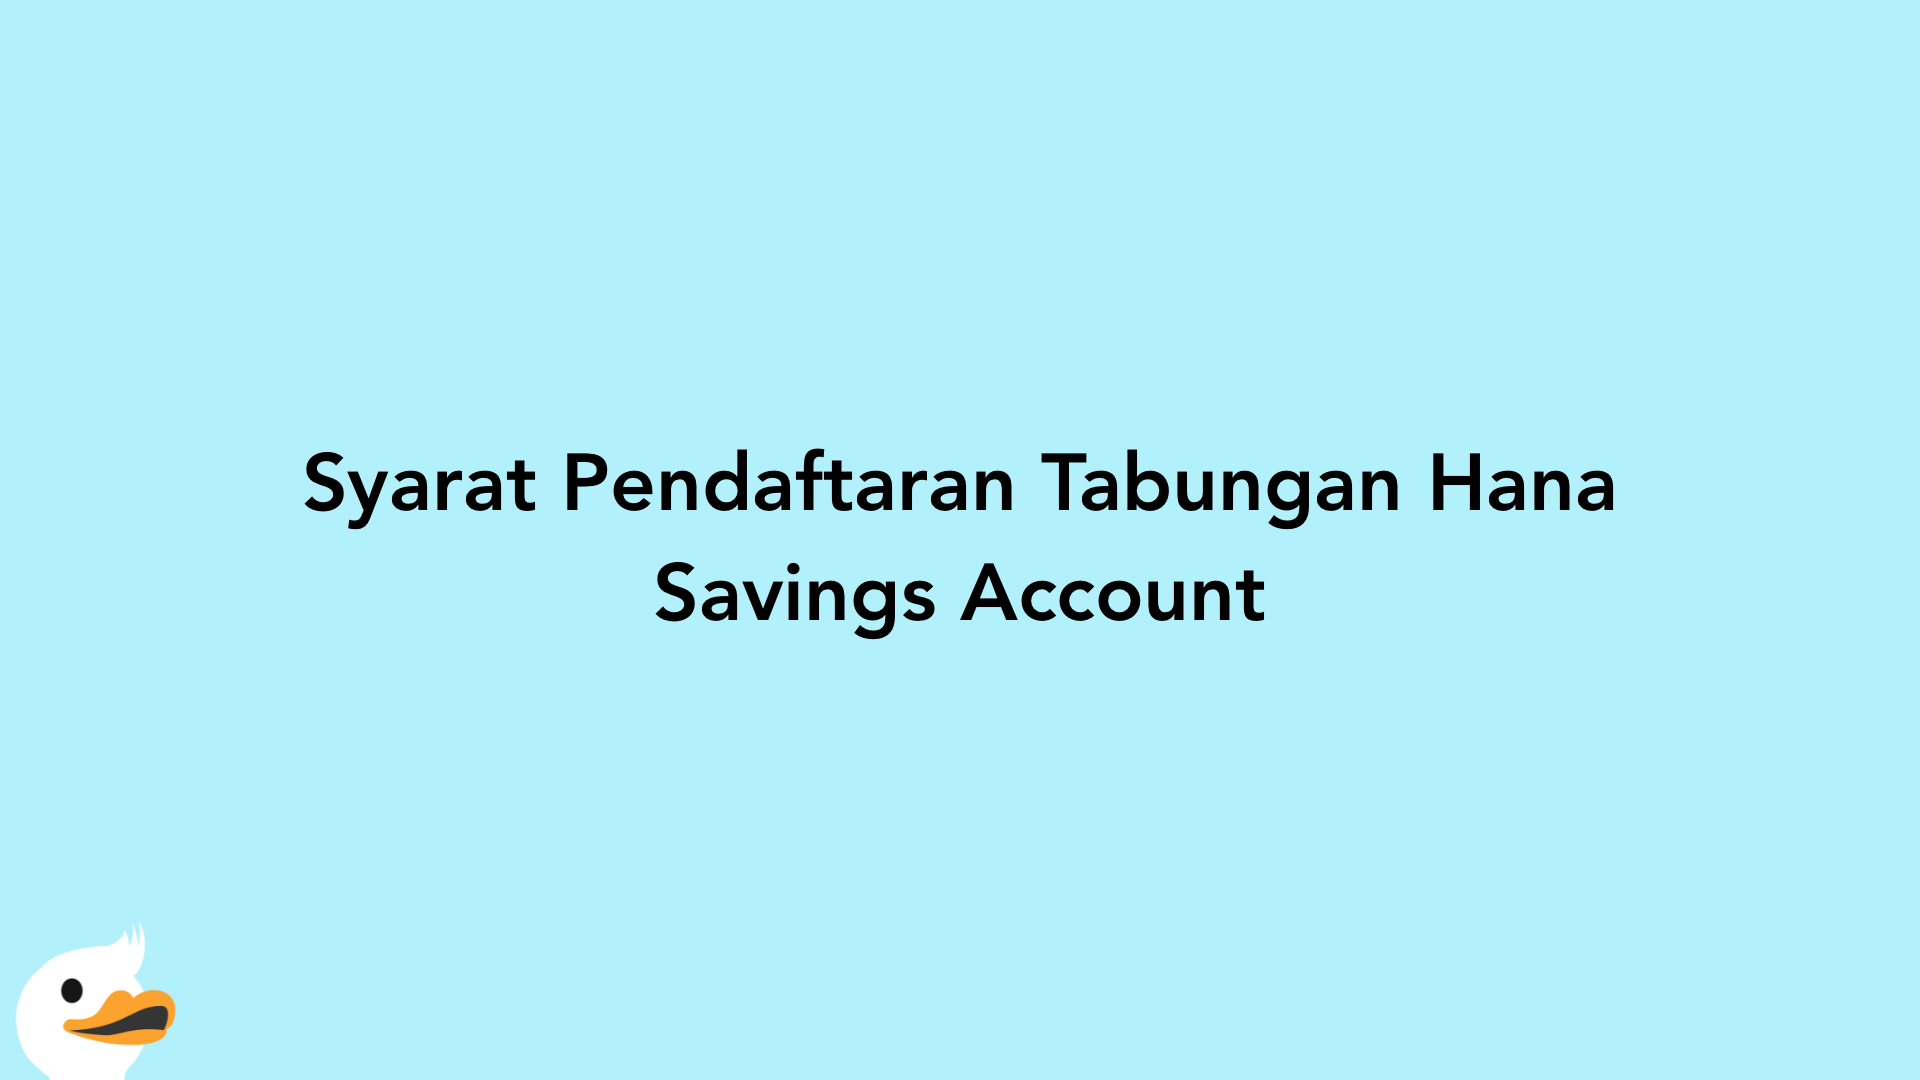 Syarat Pendaftaran Tabungan Hana Savings Account